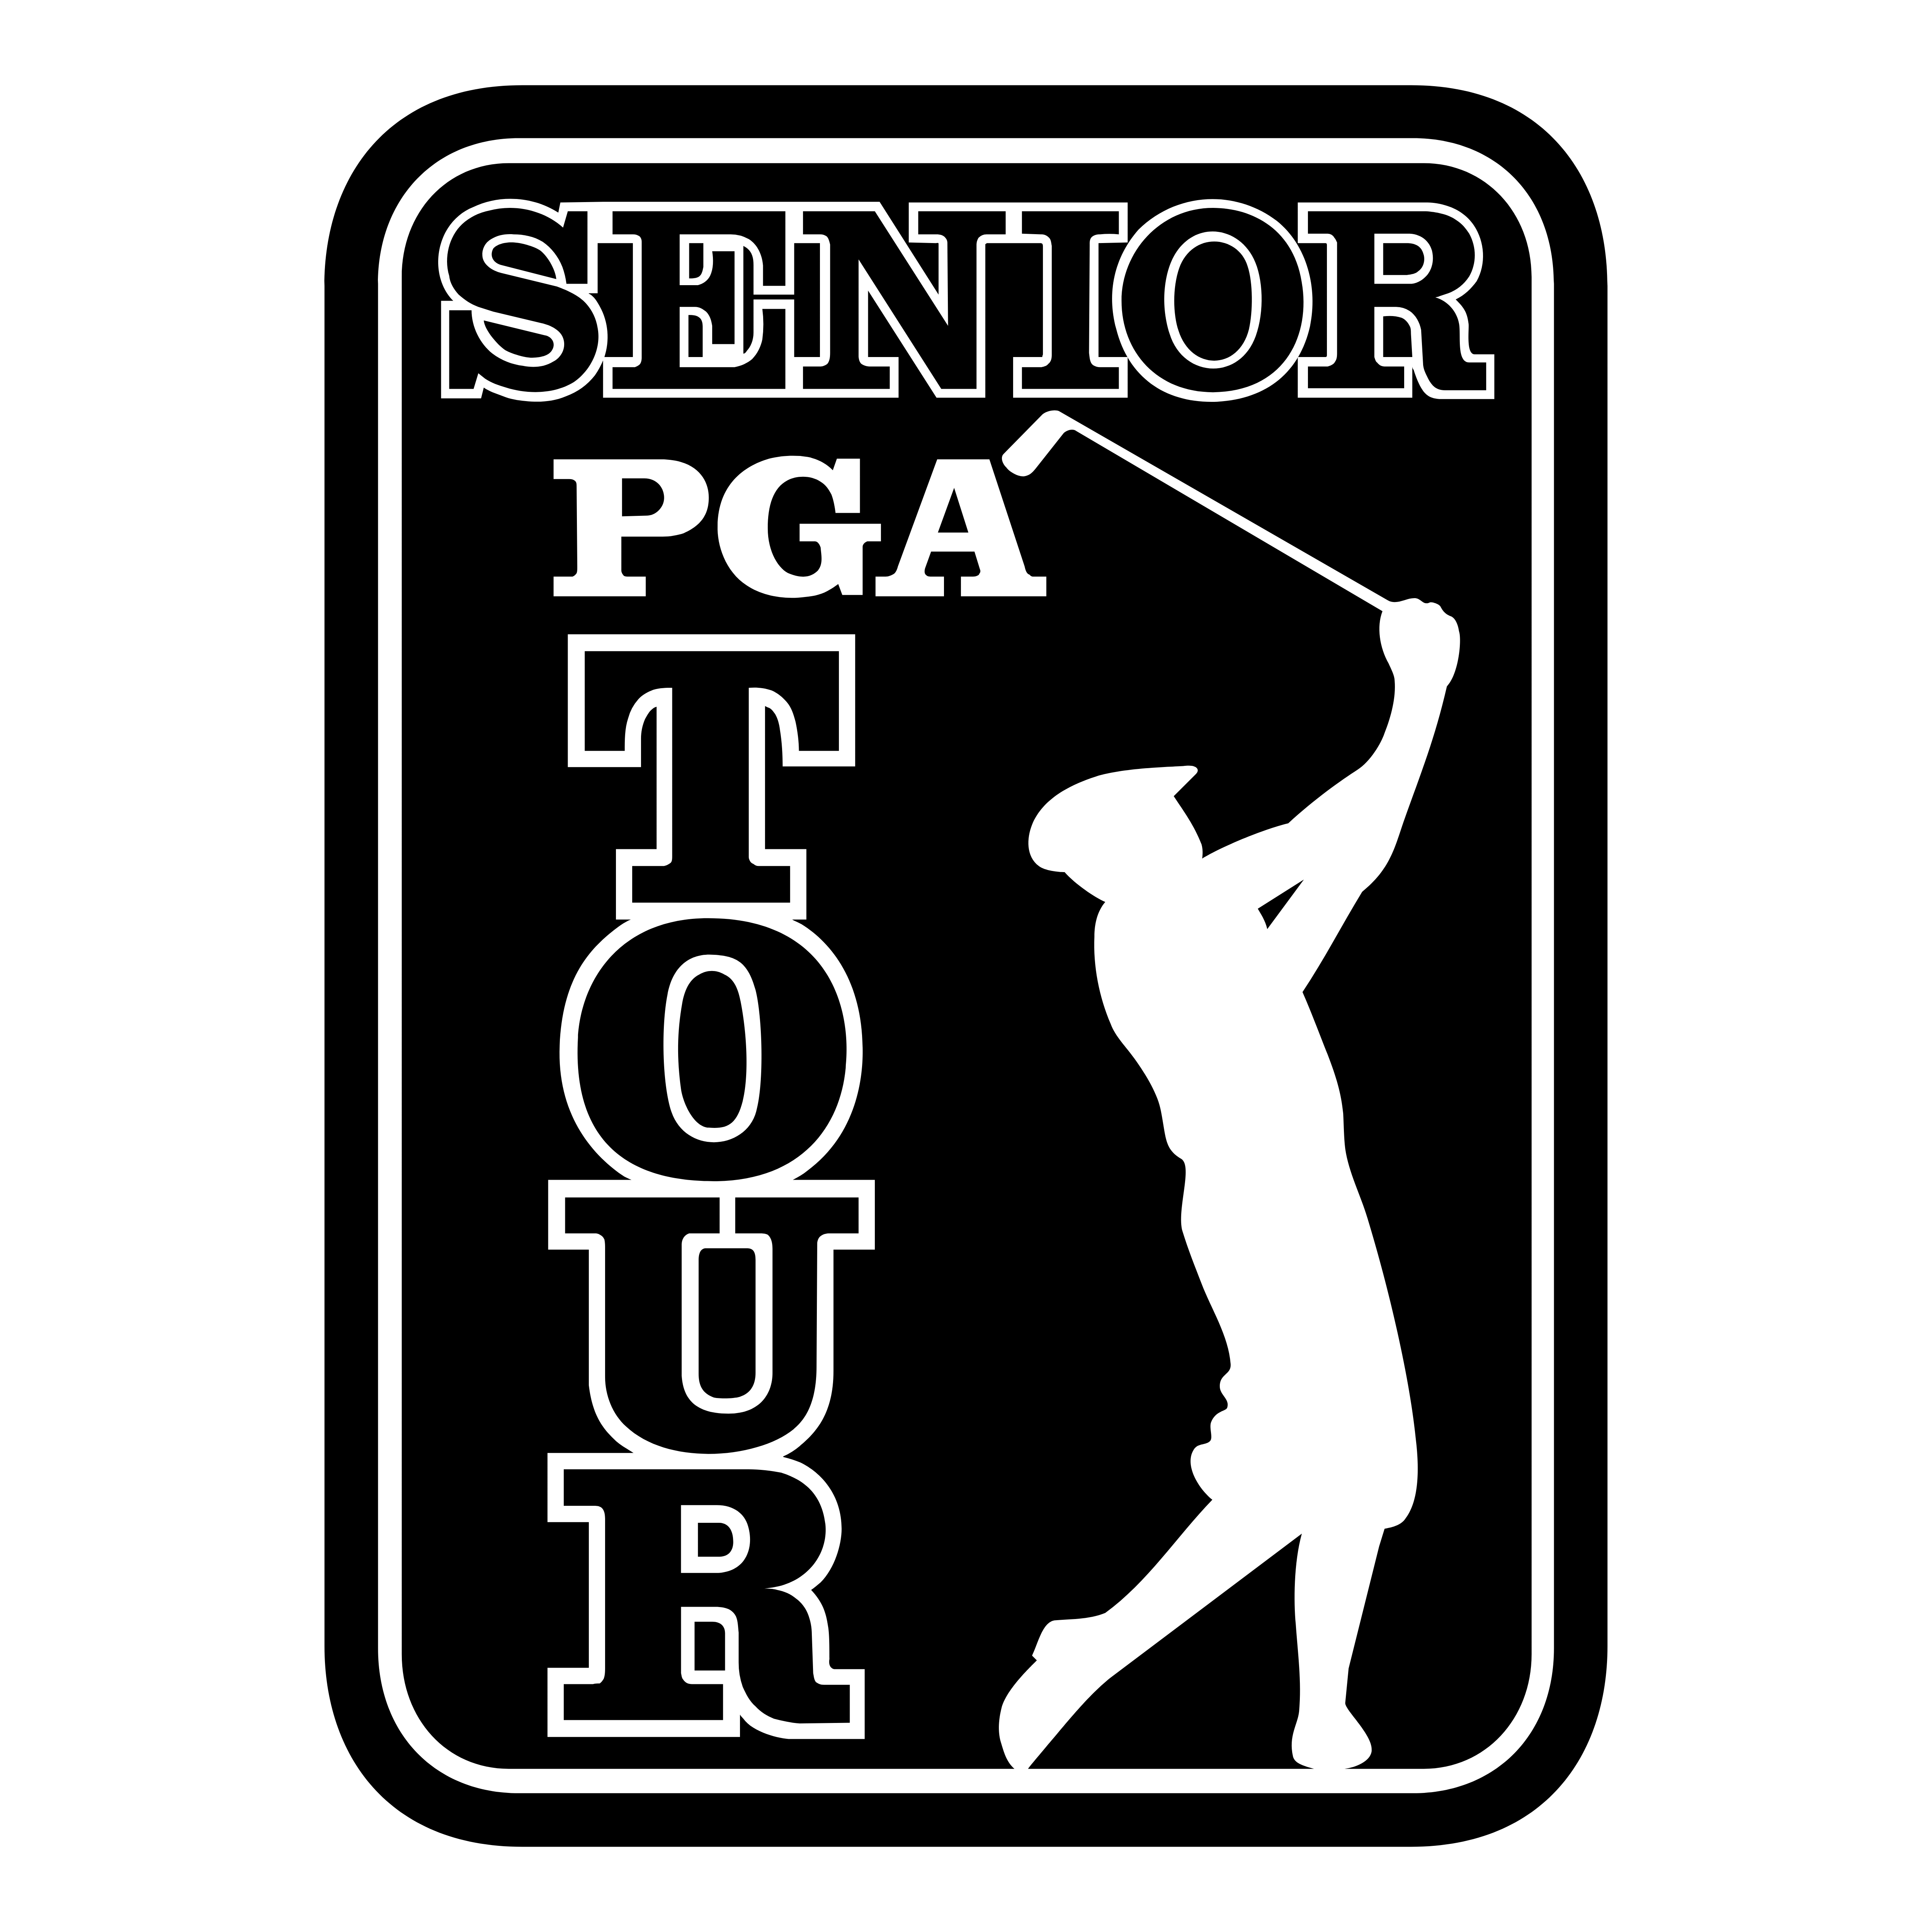 PGA Tour Logos Download